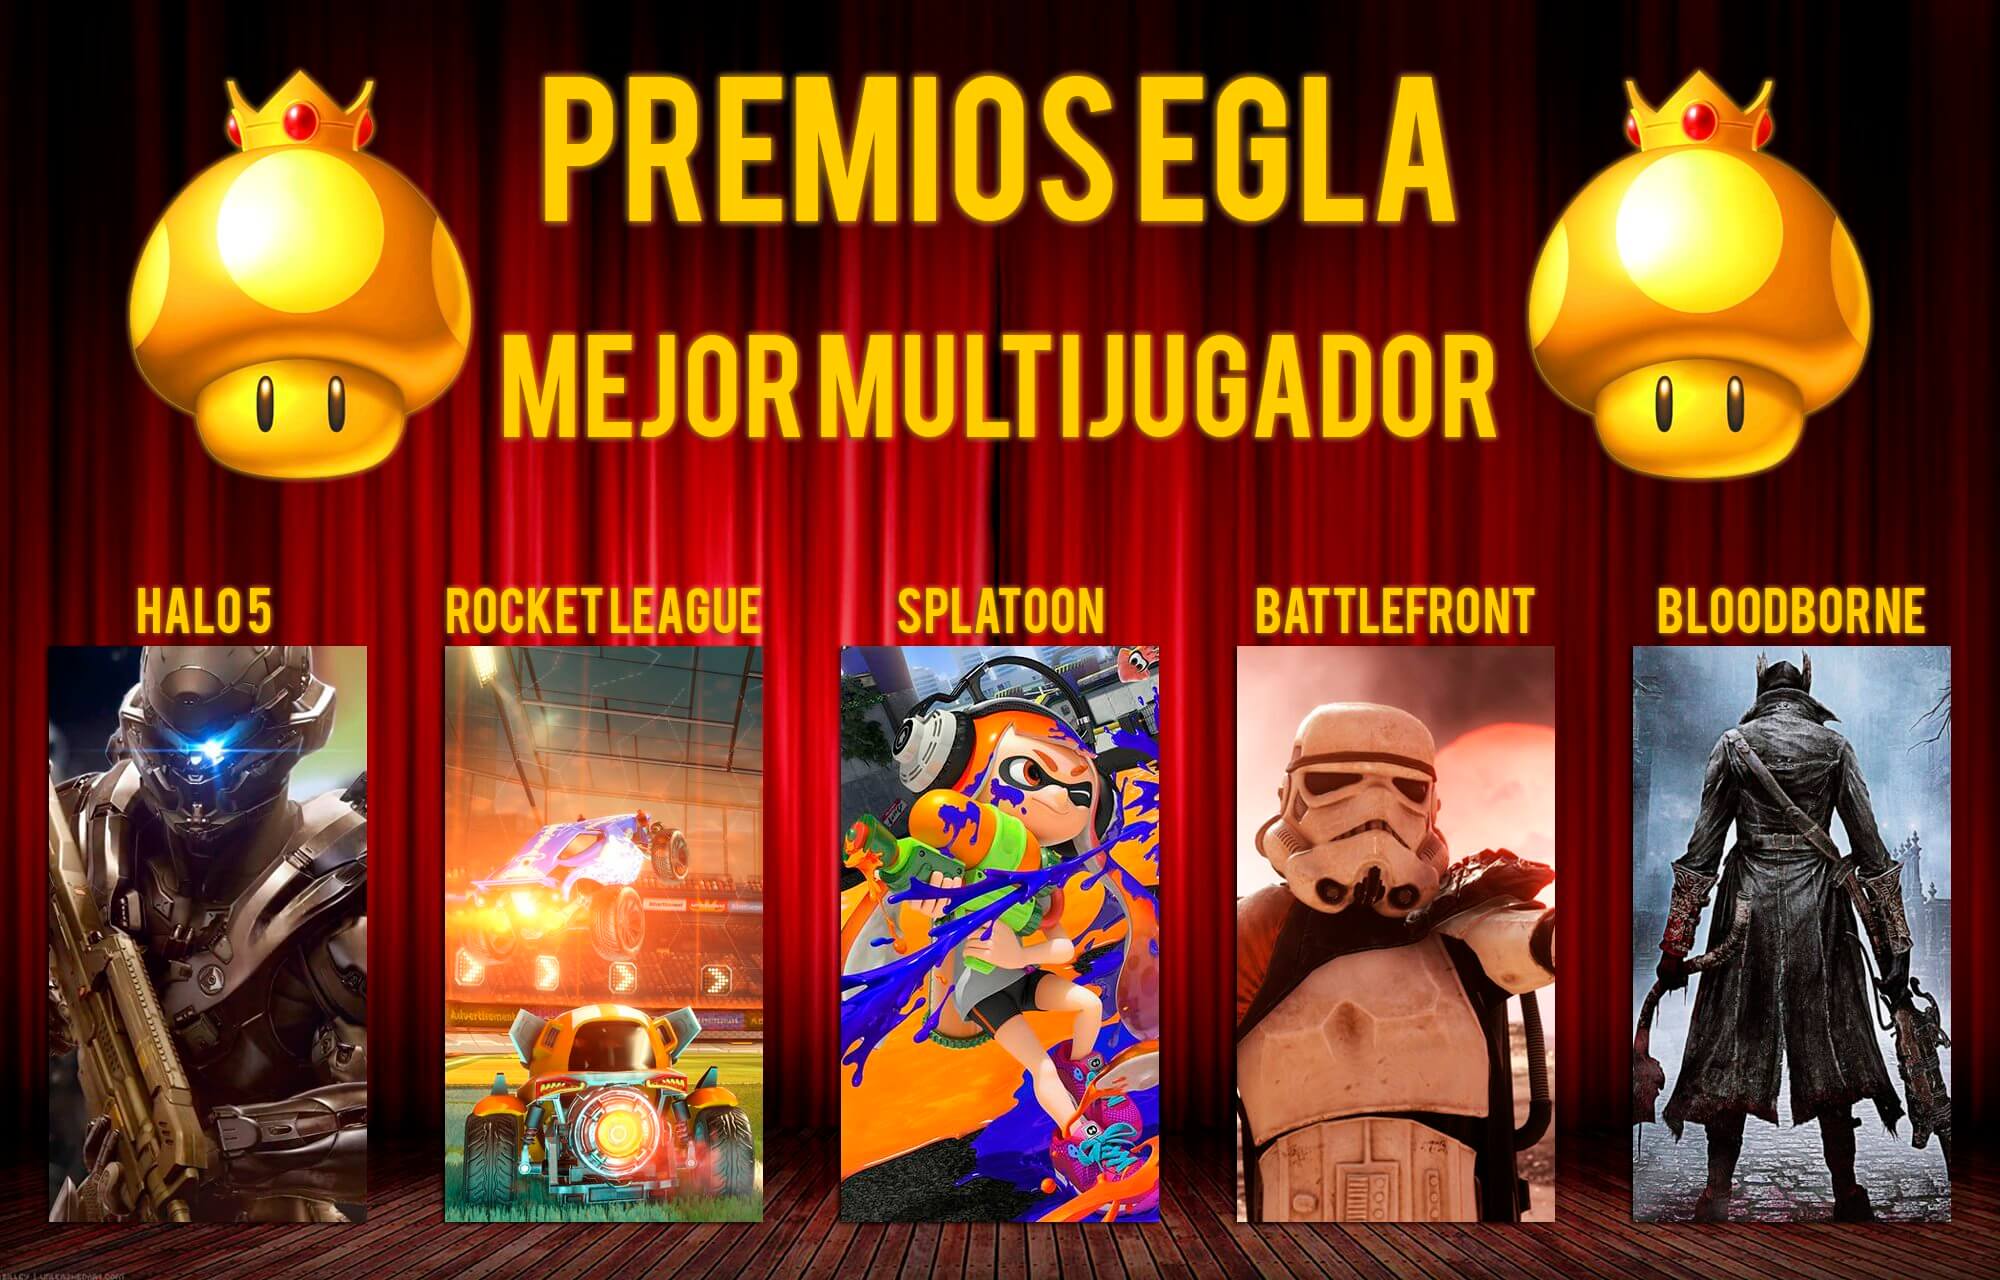 Premios EGLA 2015 Mejor Multijugador